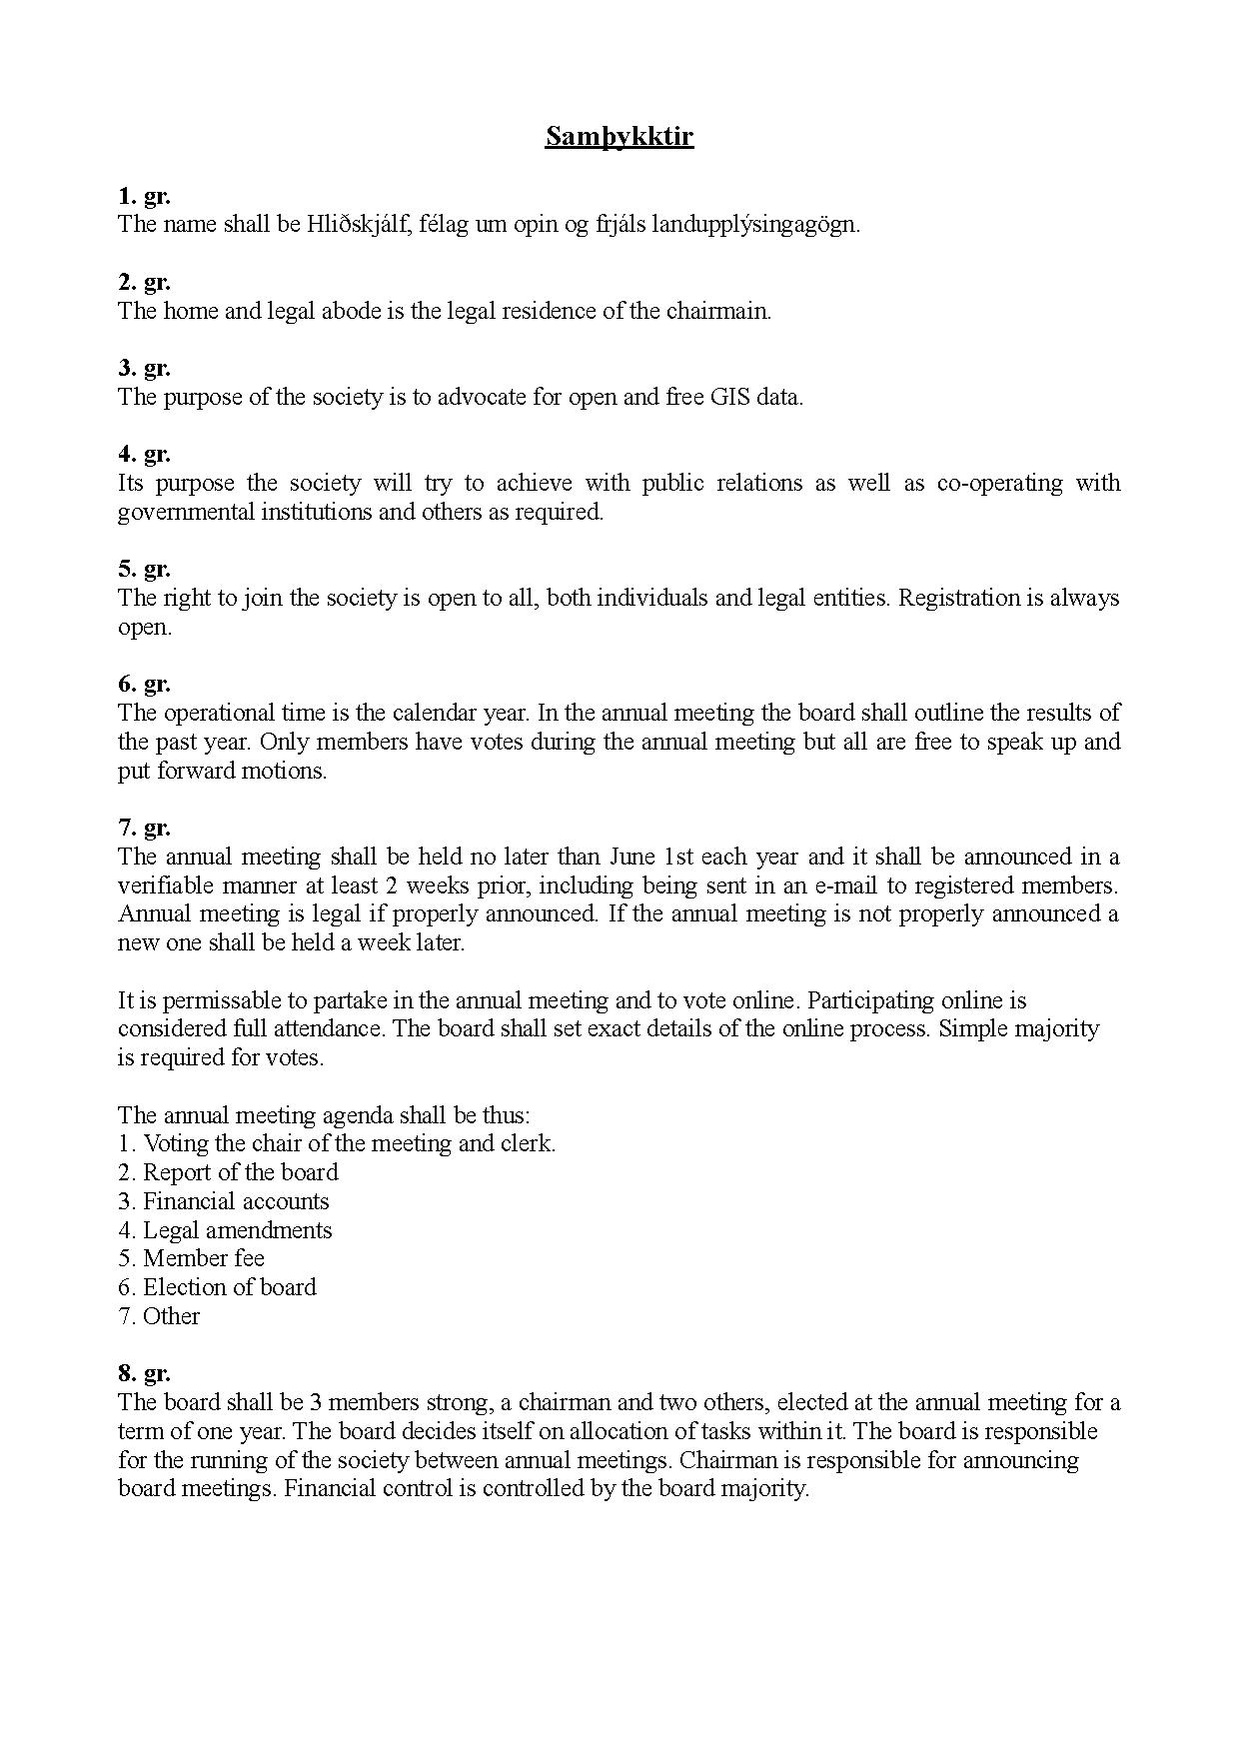 Laws of Hlidskjalf.pdf